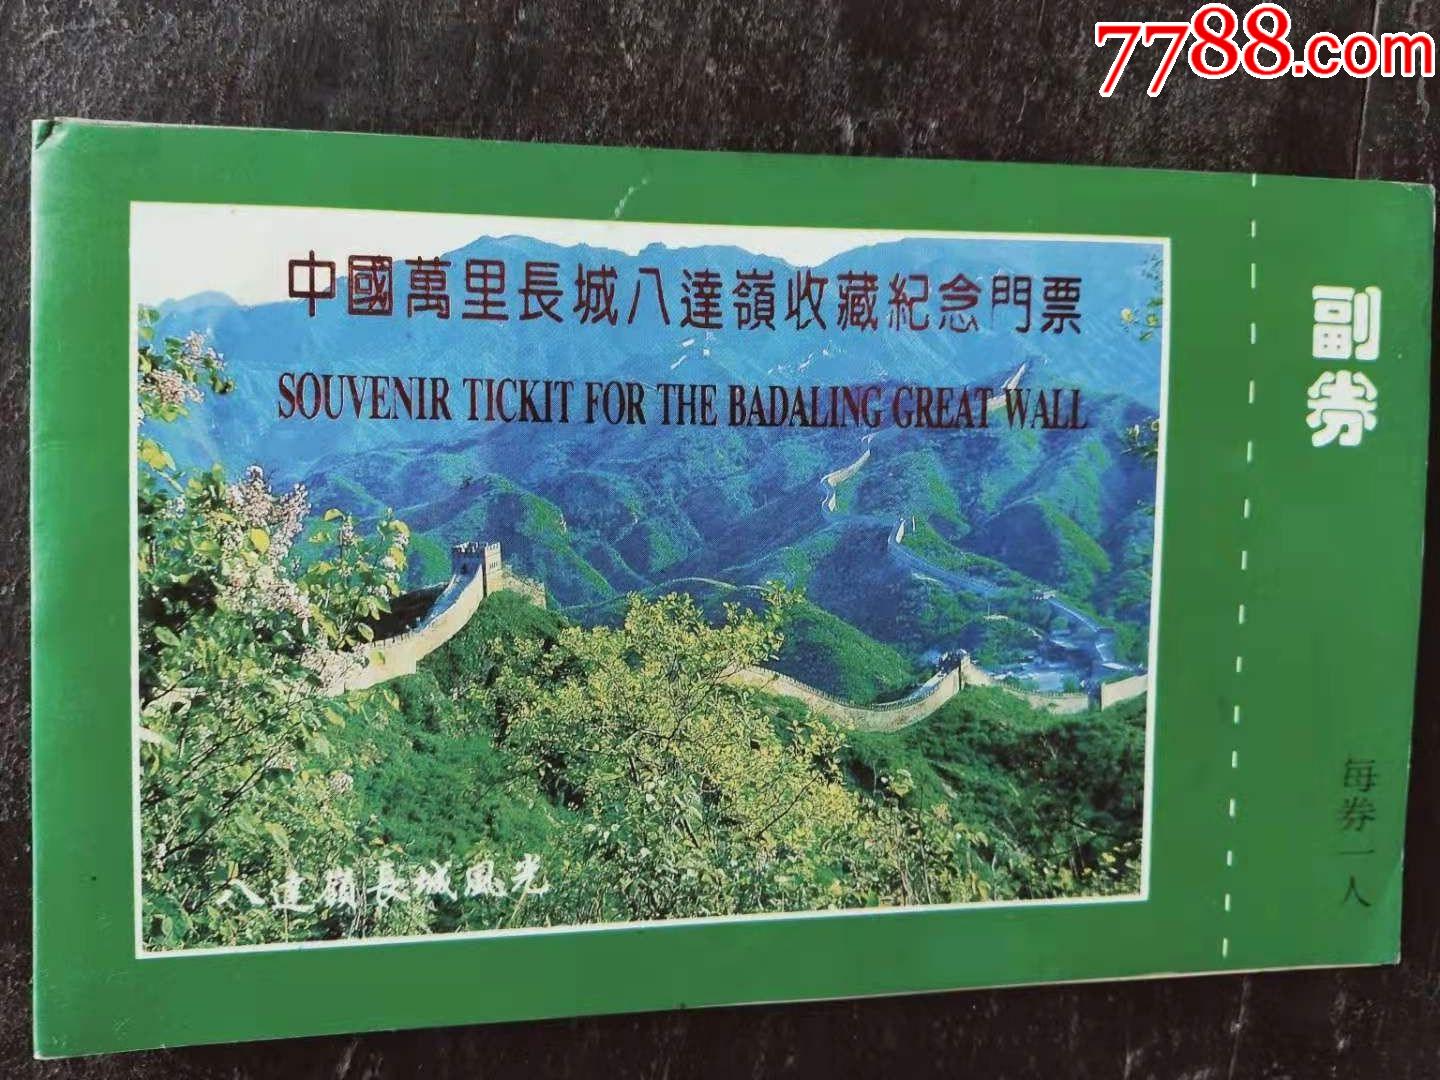 中国万里长城八达岭收藏纪念门票